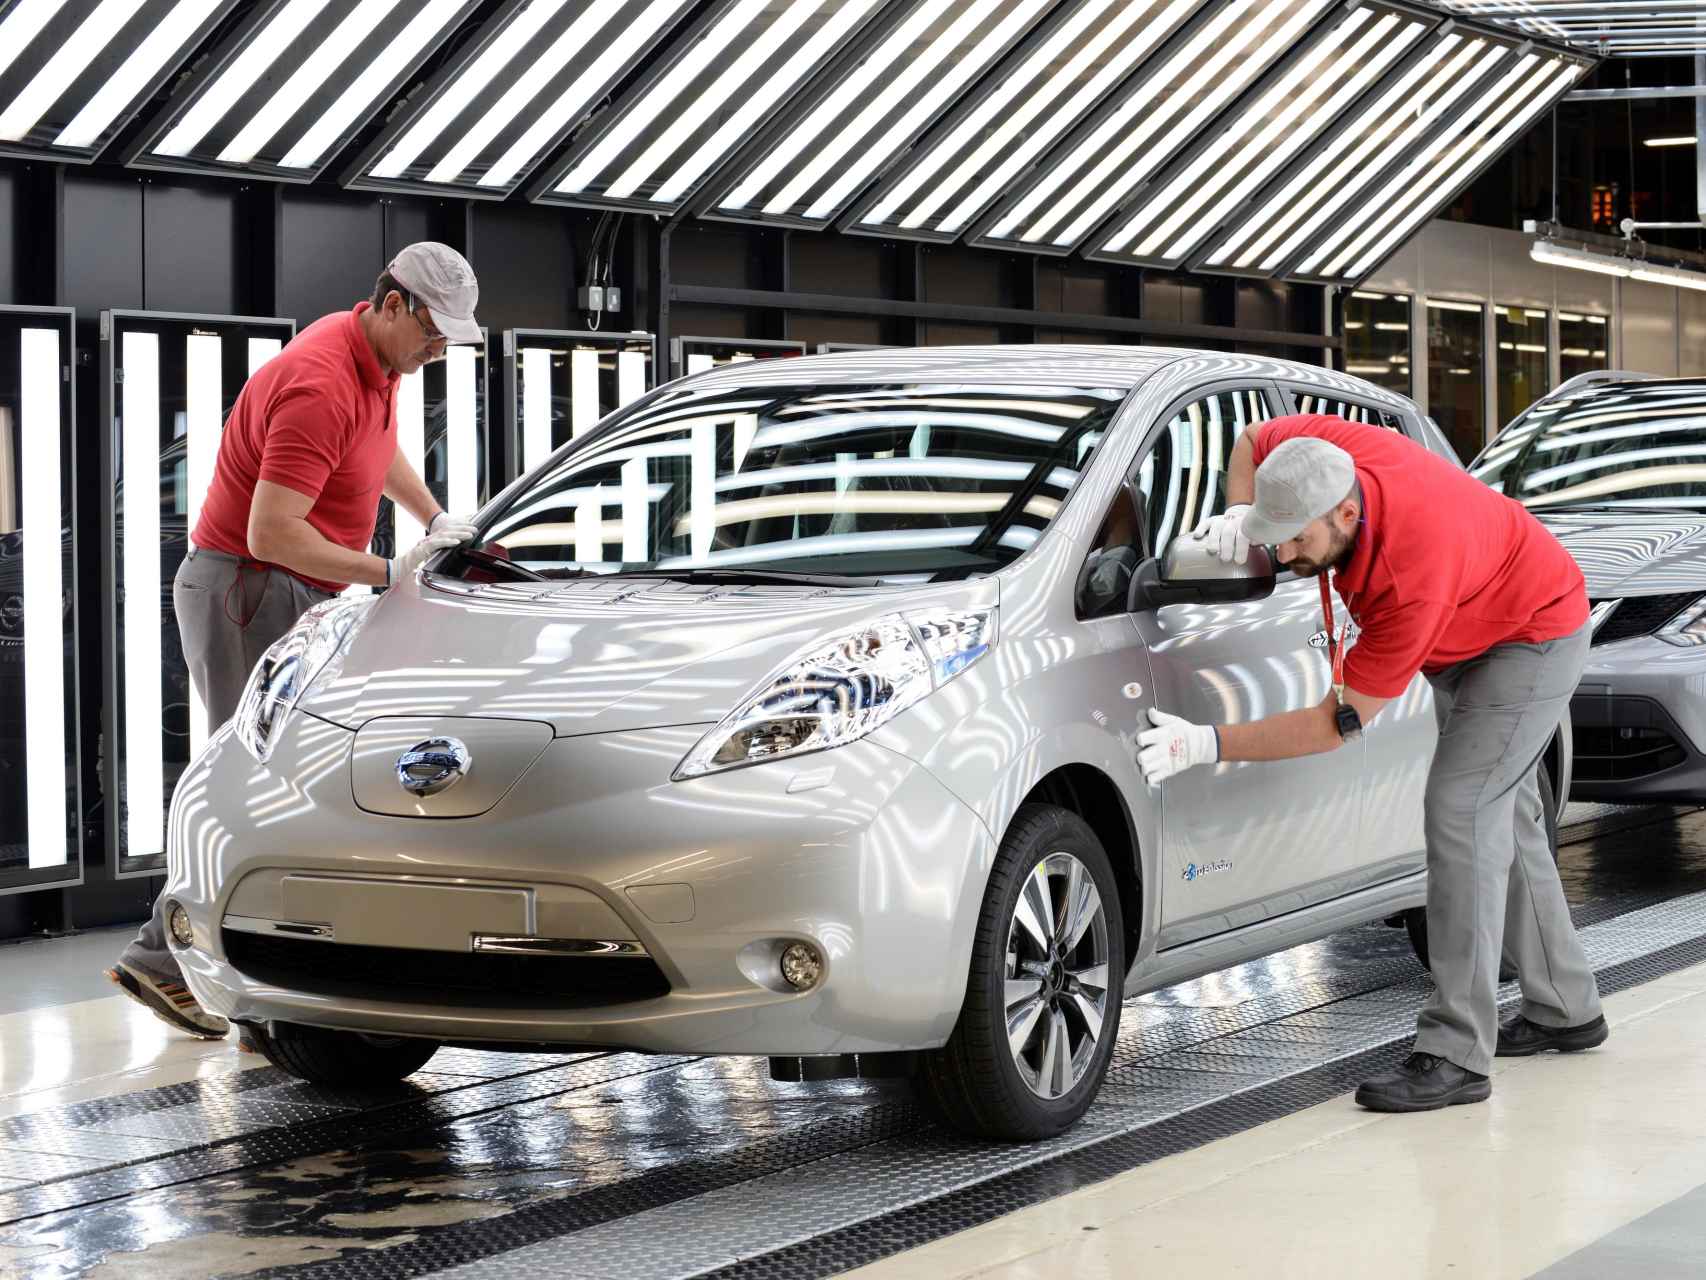 ¿Perjudicará al empleo en las fábricas la llegada del coche eléctrico?